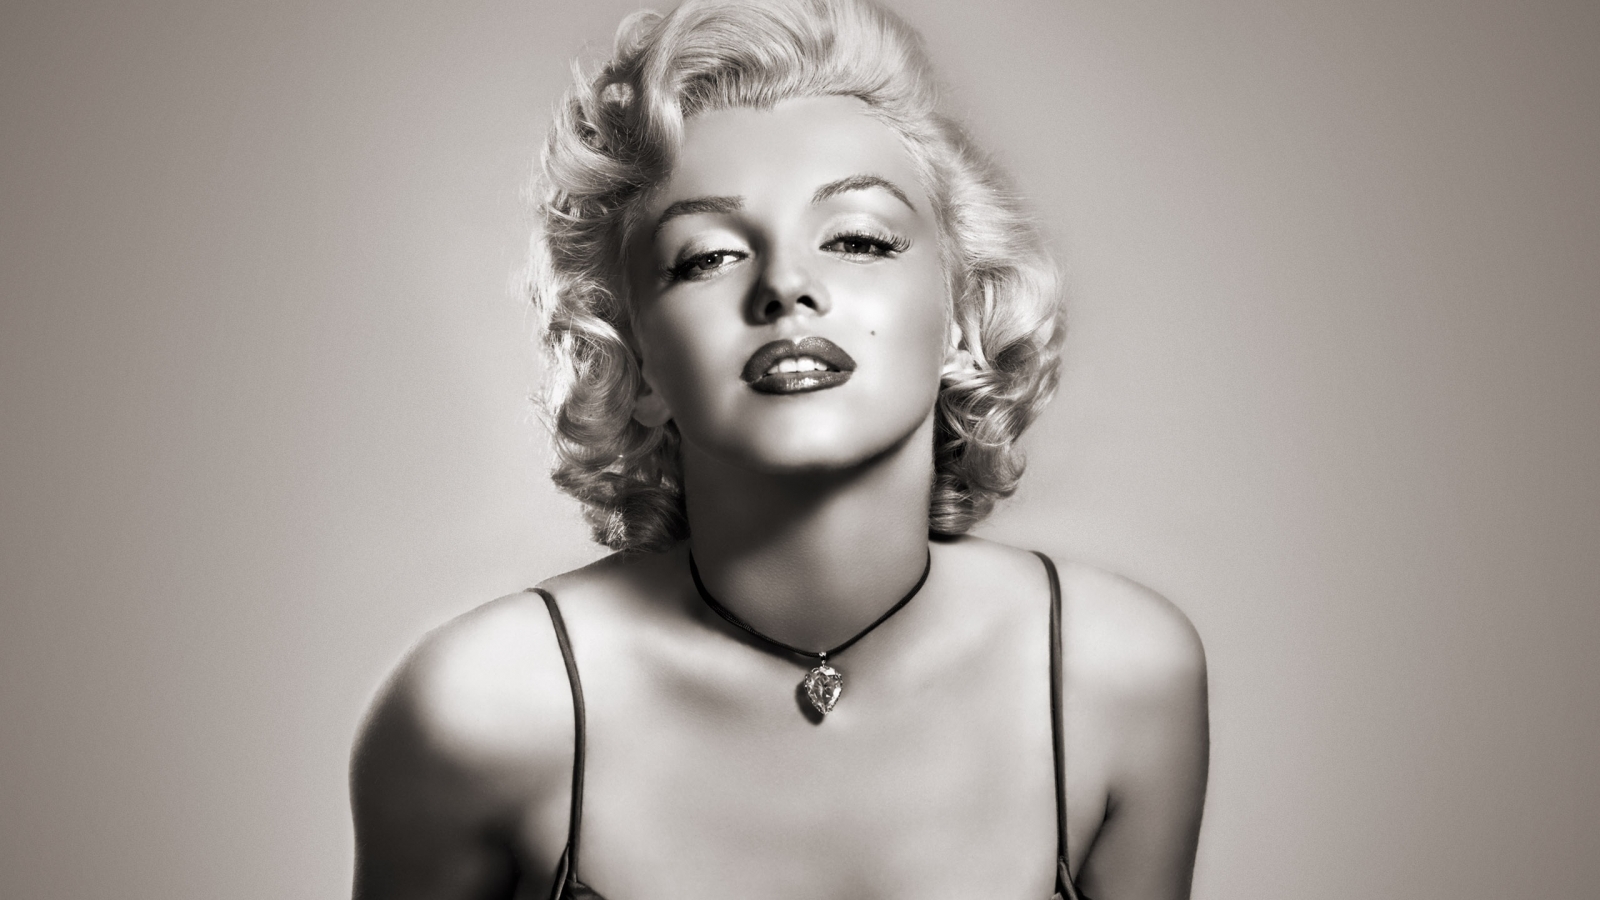 Gorgeous Marilyn Monroe for 1600 x 900 HDTV resolution